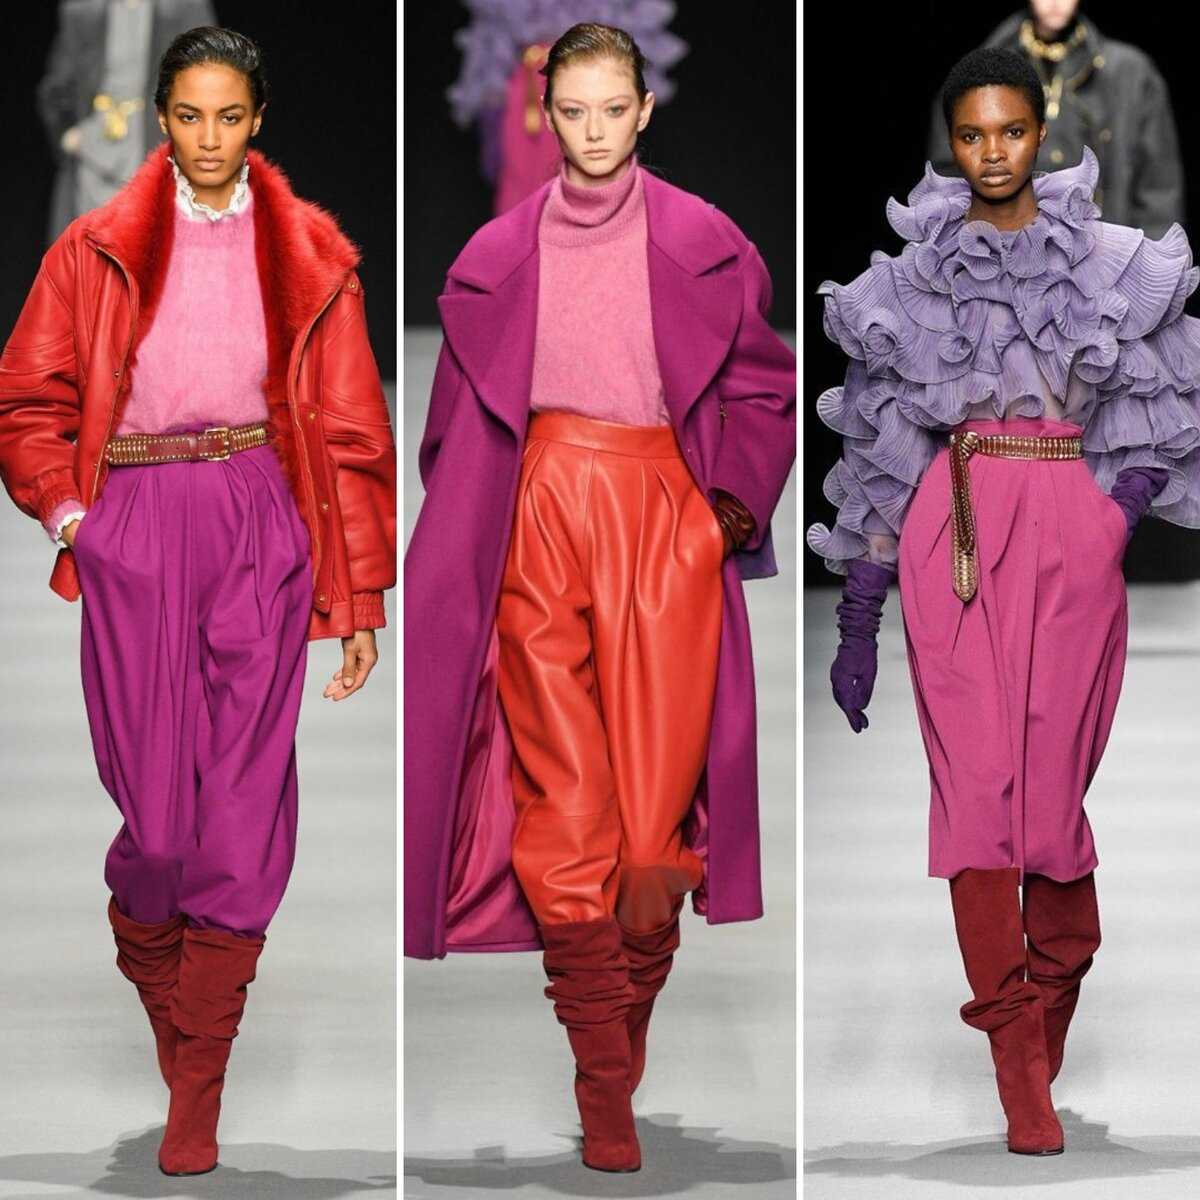 Модные юбки весна-лето 2021: модели, цвета принты и топ 10 образов